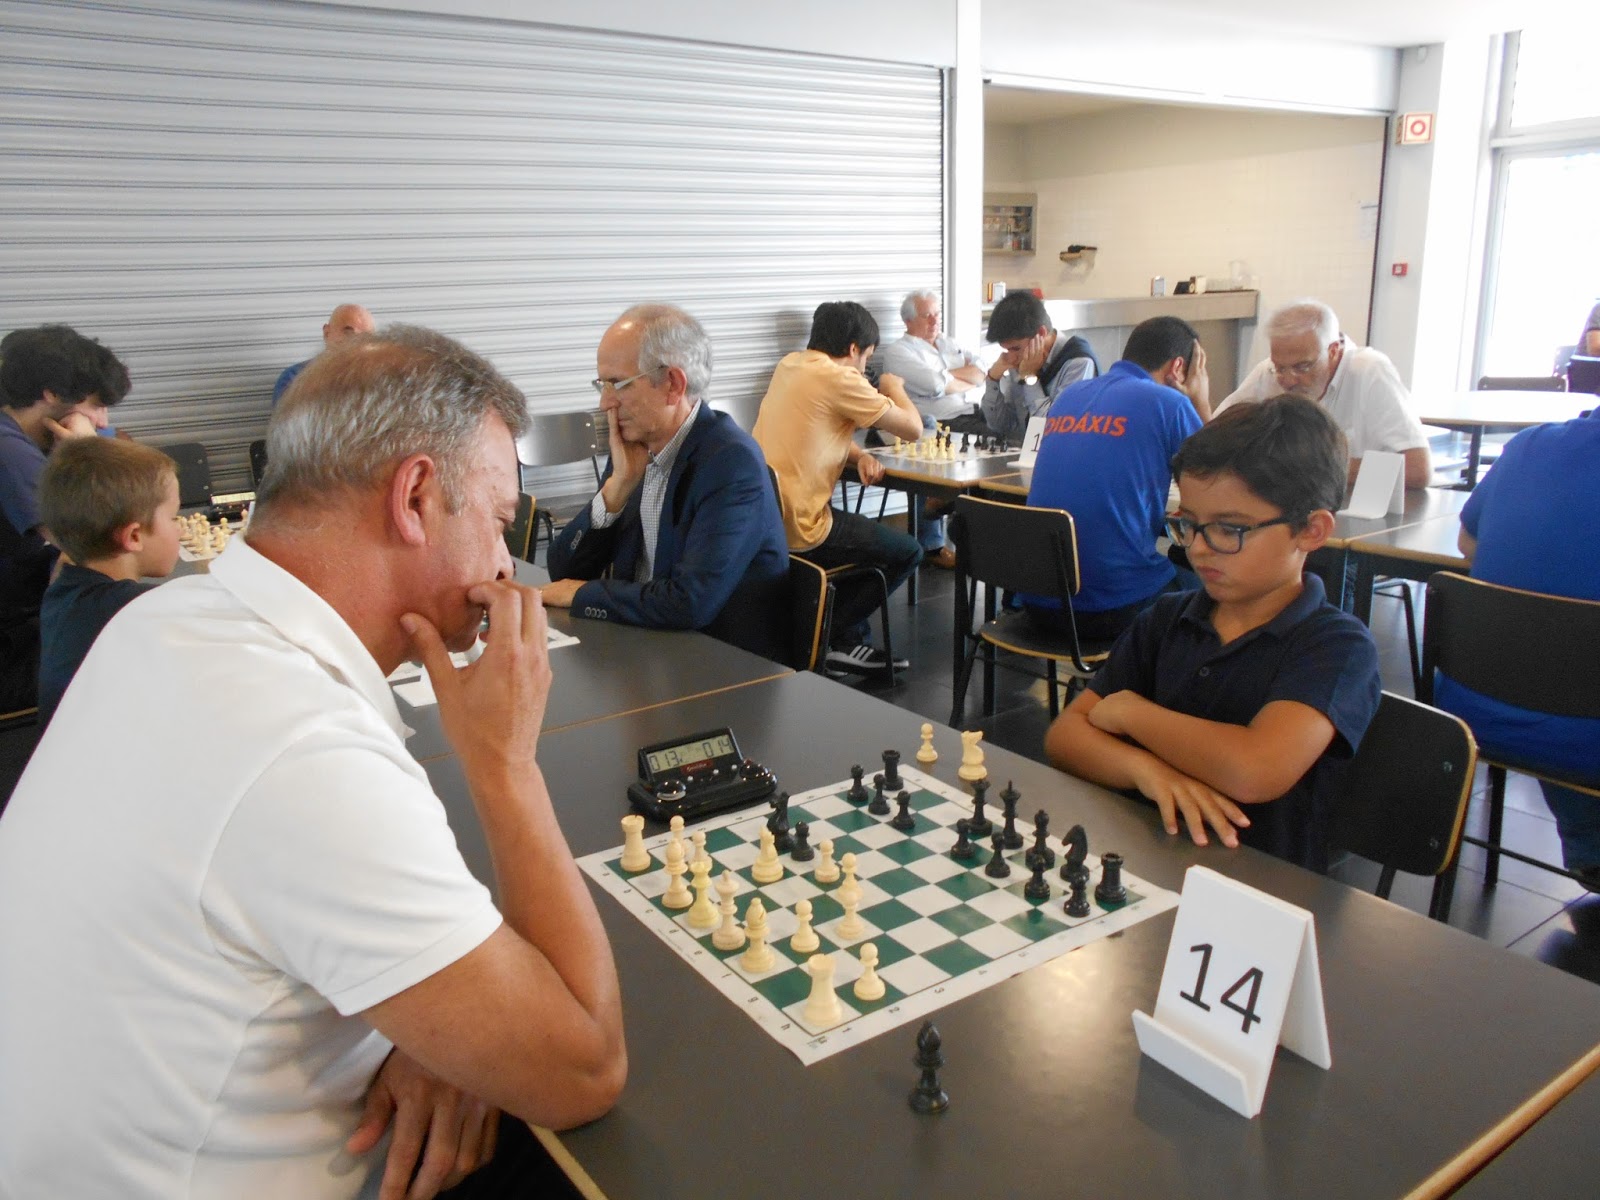 Clube de Xadrez- Peão Passado - club de xadrez 